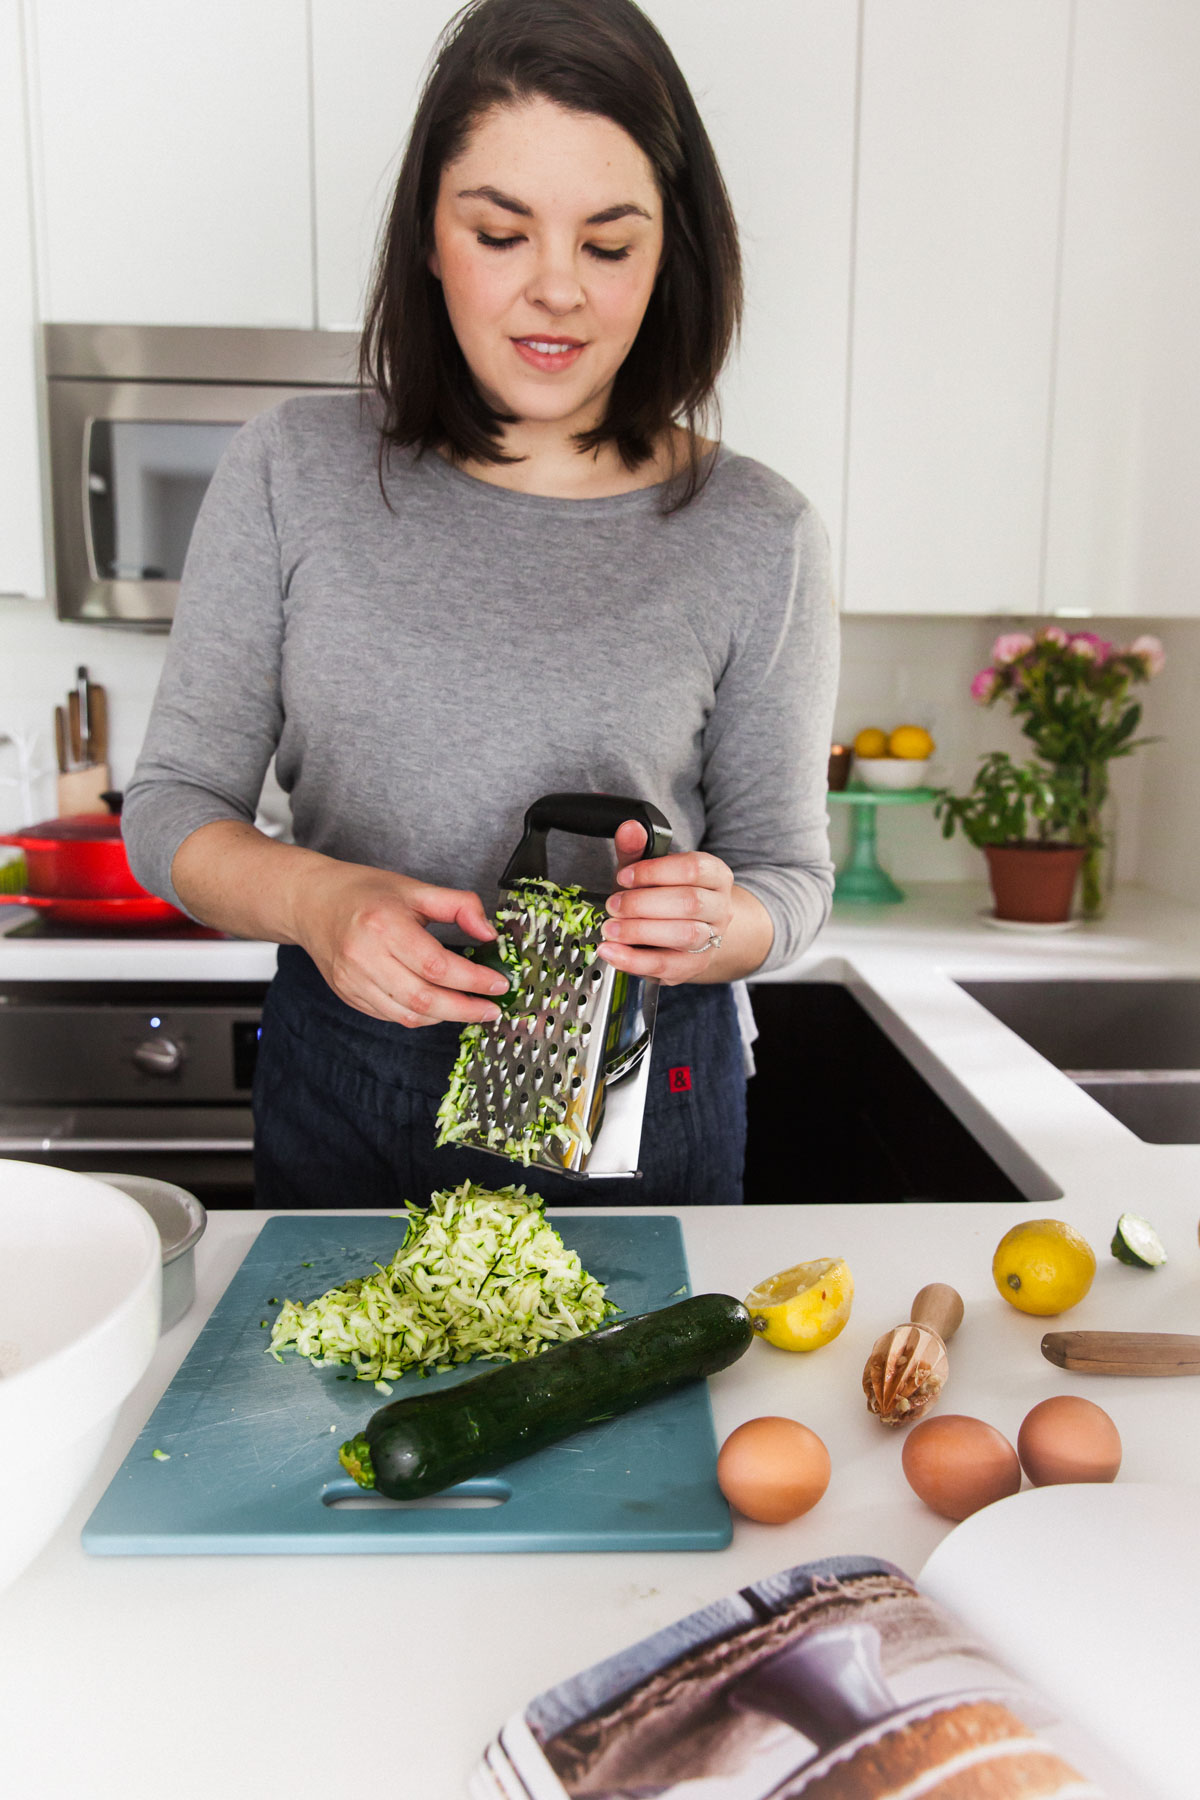 Shredding zucchini with a box grater